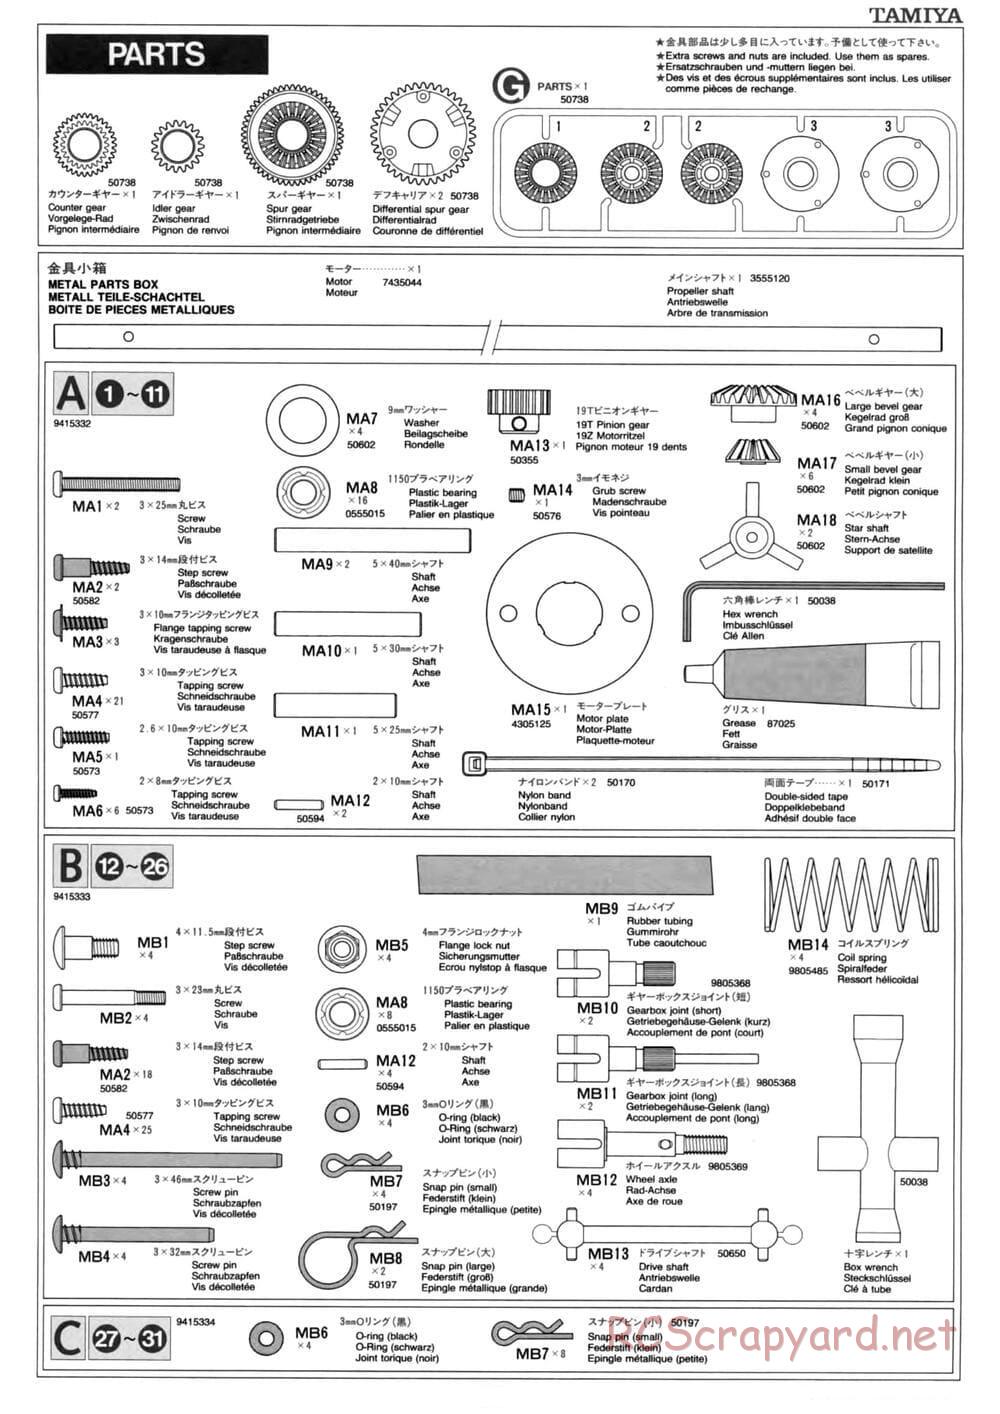 Tamiya - TL-01 Chassis - Manual - Page 18